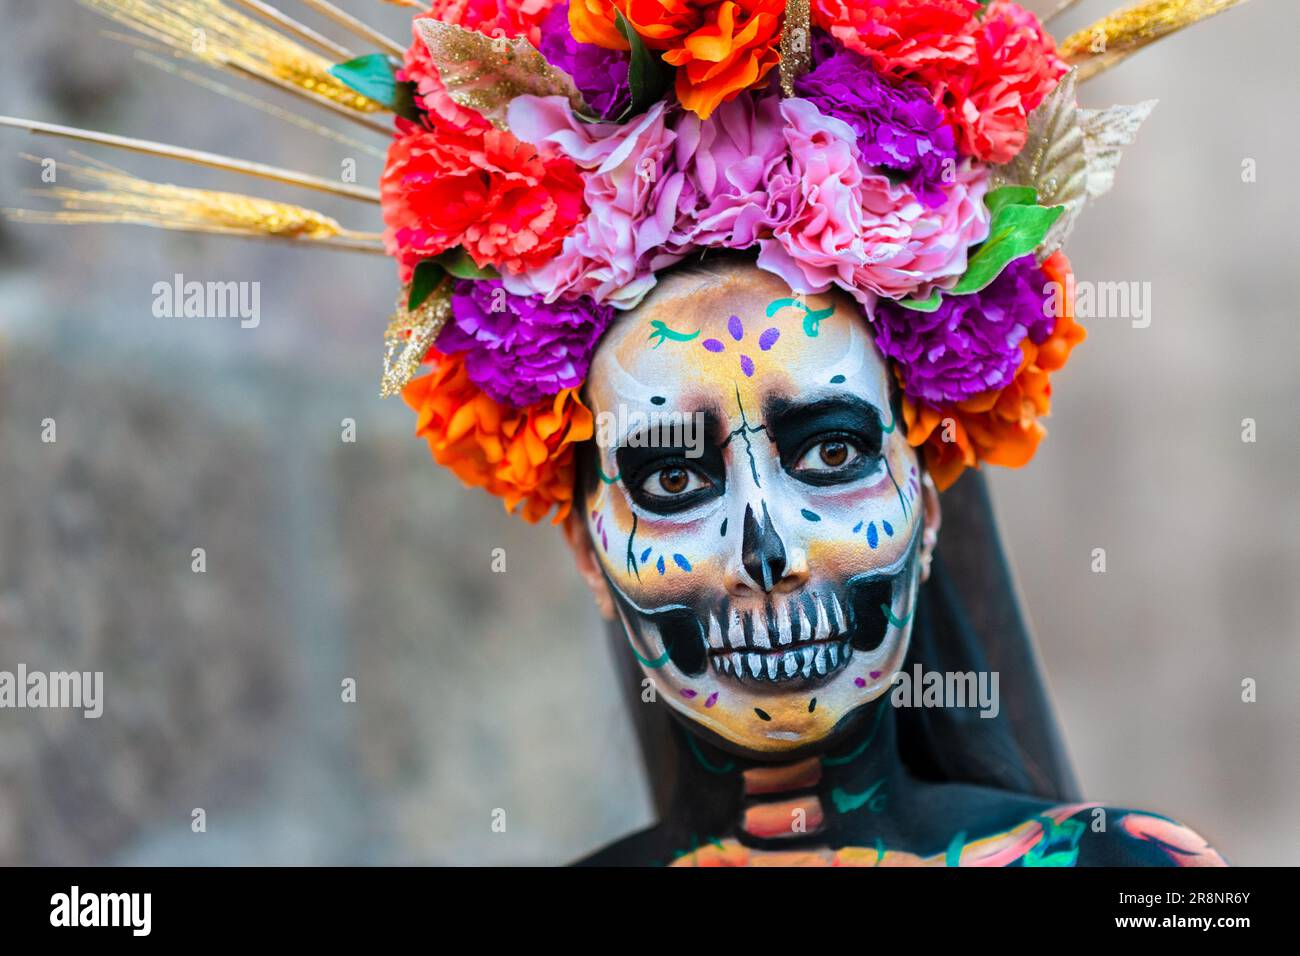 Eine junge Mexikanerin, verkleidet als La Catrina, nimmt an den Feierlichkeiten zum Tag der Toten in Morelia, Mexiko, Teil. Stockfoto